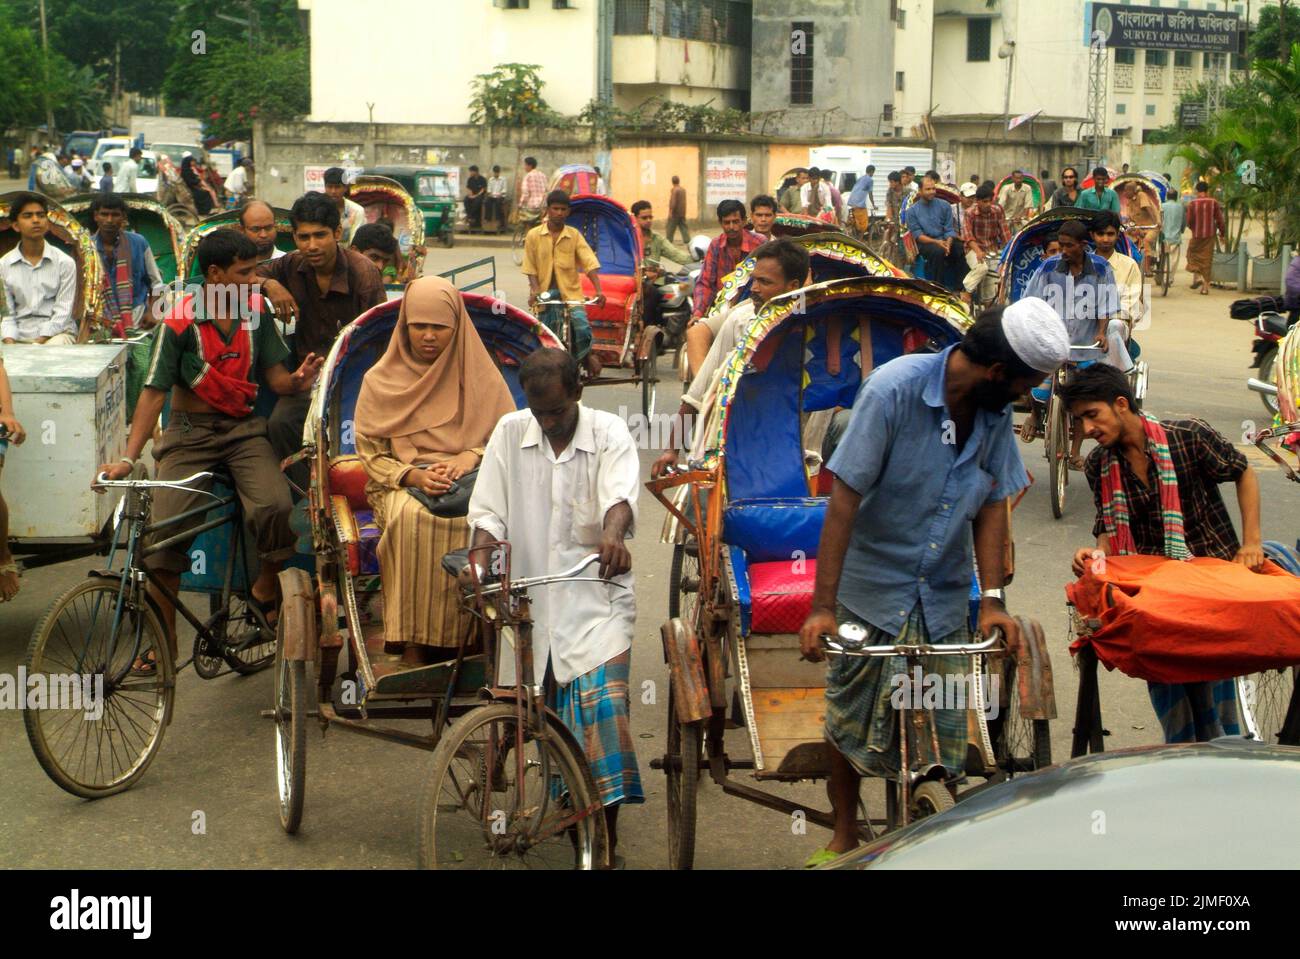 Dhaka, Bangladesh - 17 septembre 2007: Des personnes non identifiées sur des rickshaws traditionnels, un type traditionnel de transport Banque D'Images